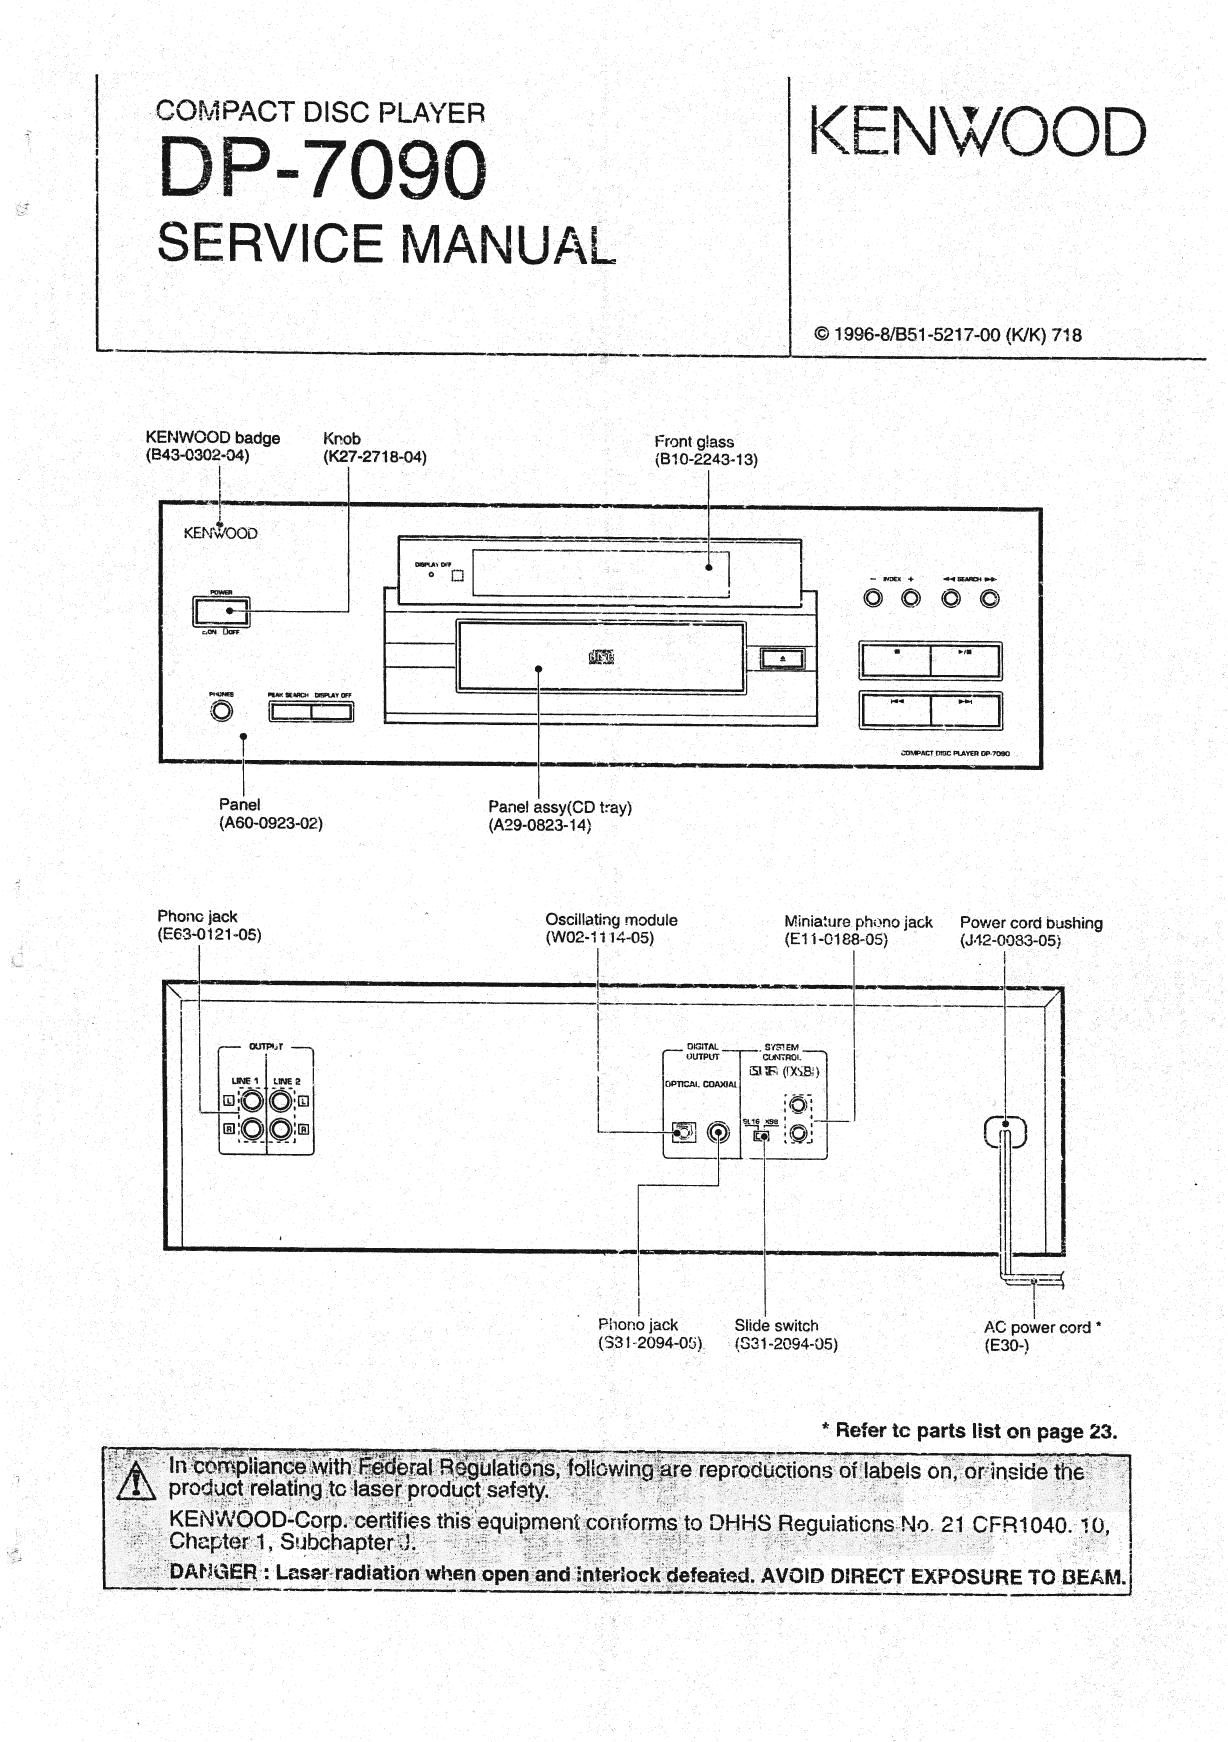 Kenwood DP 7090 Service Manual